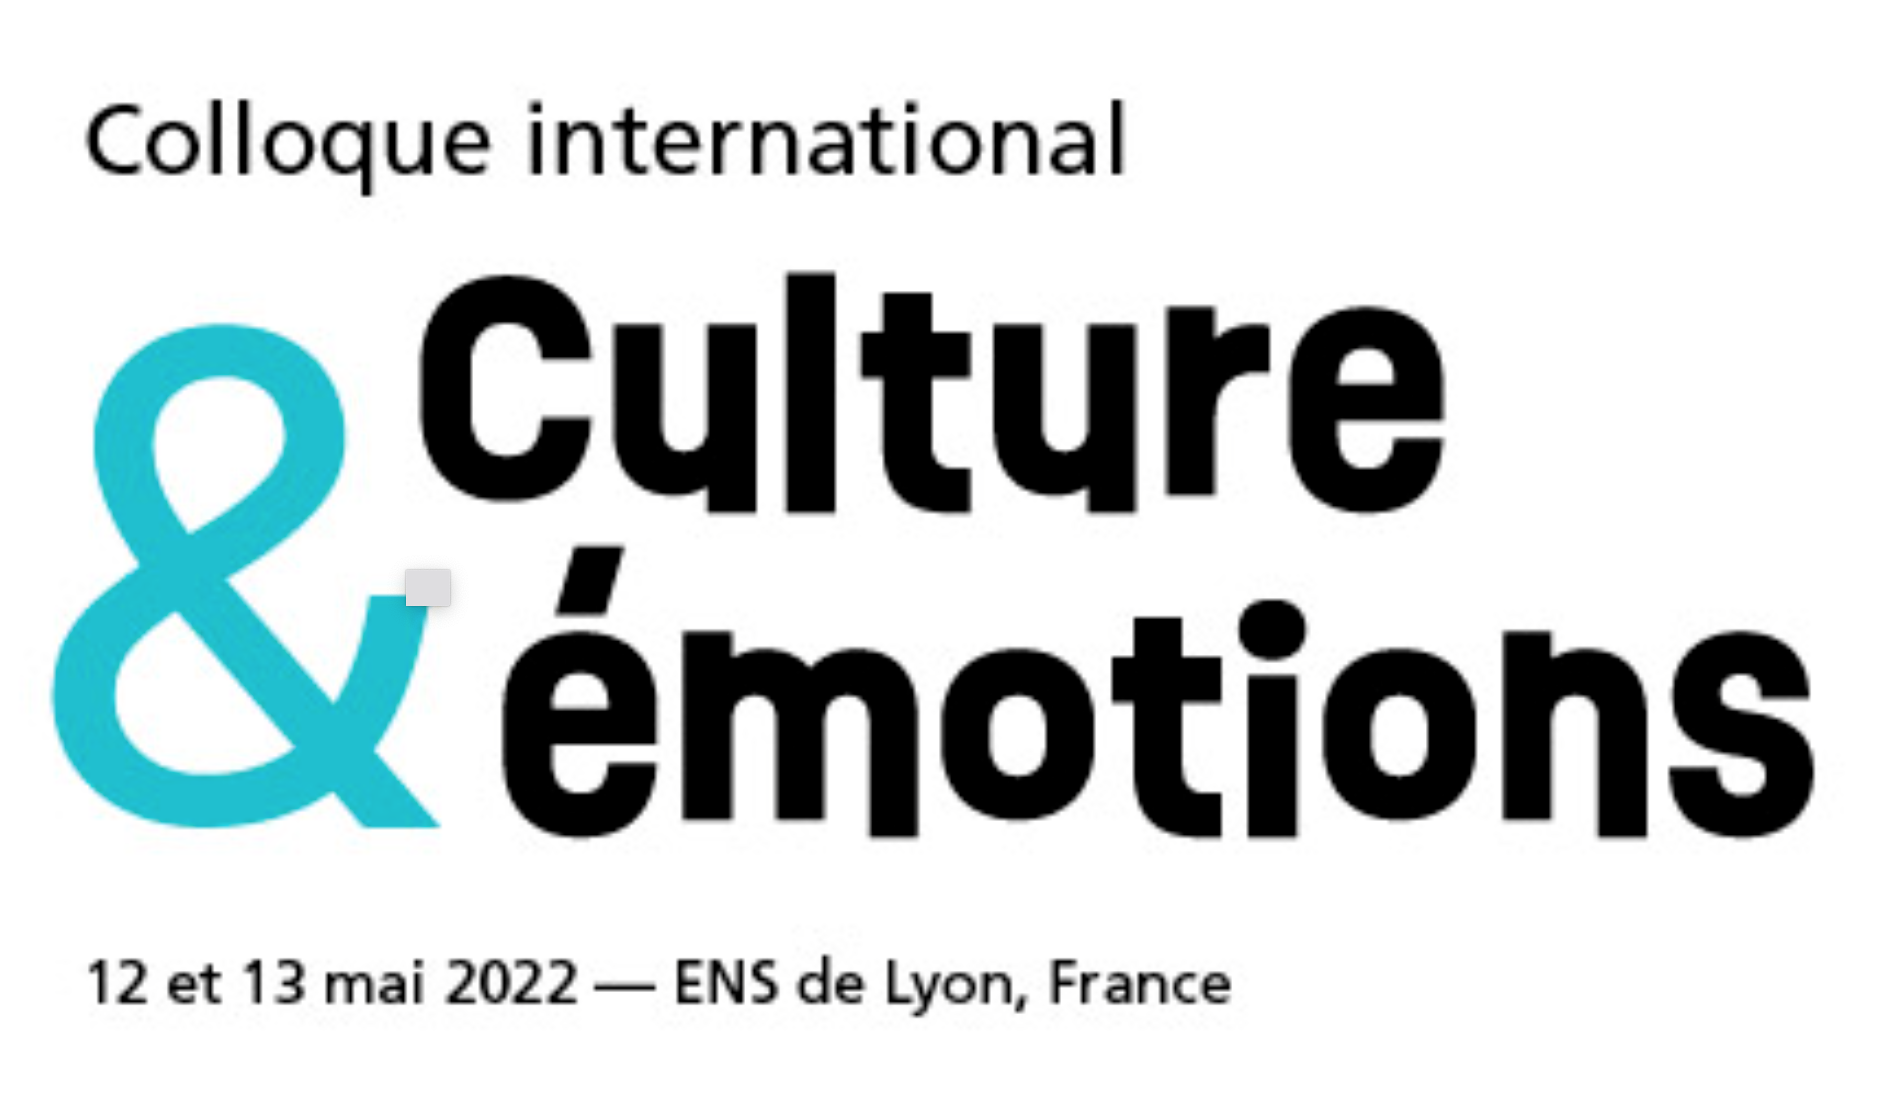 13 mai 2022, Alain Quemin intervient au colloque "Culture et Emotions" organisé à l'ENS de Lyon